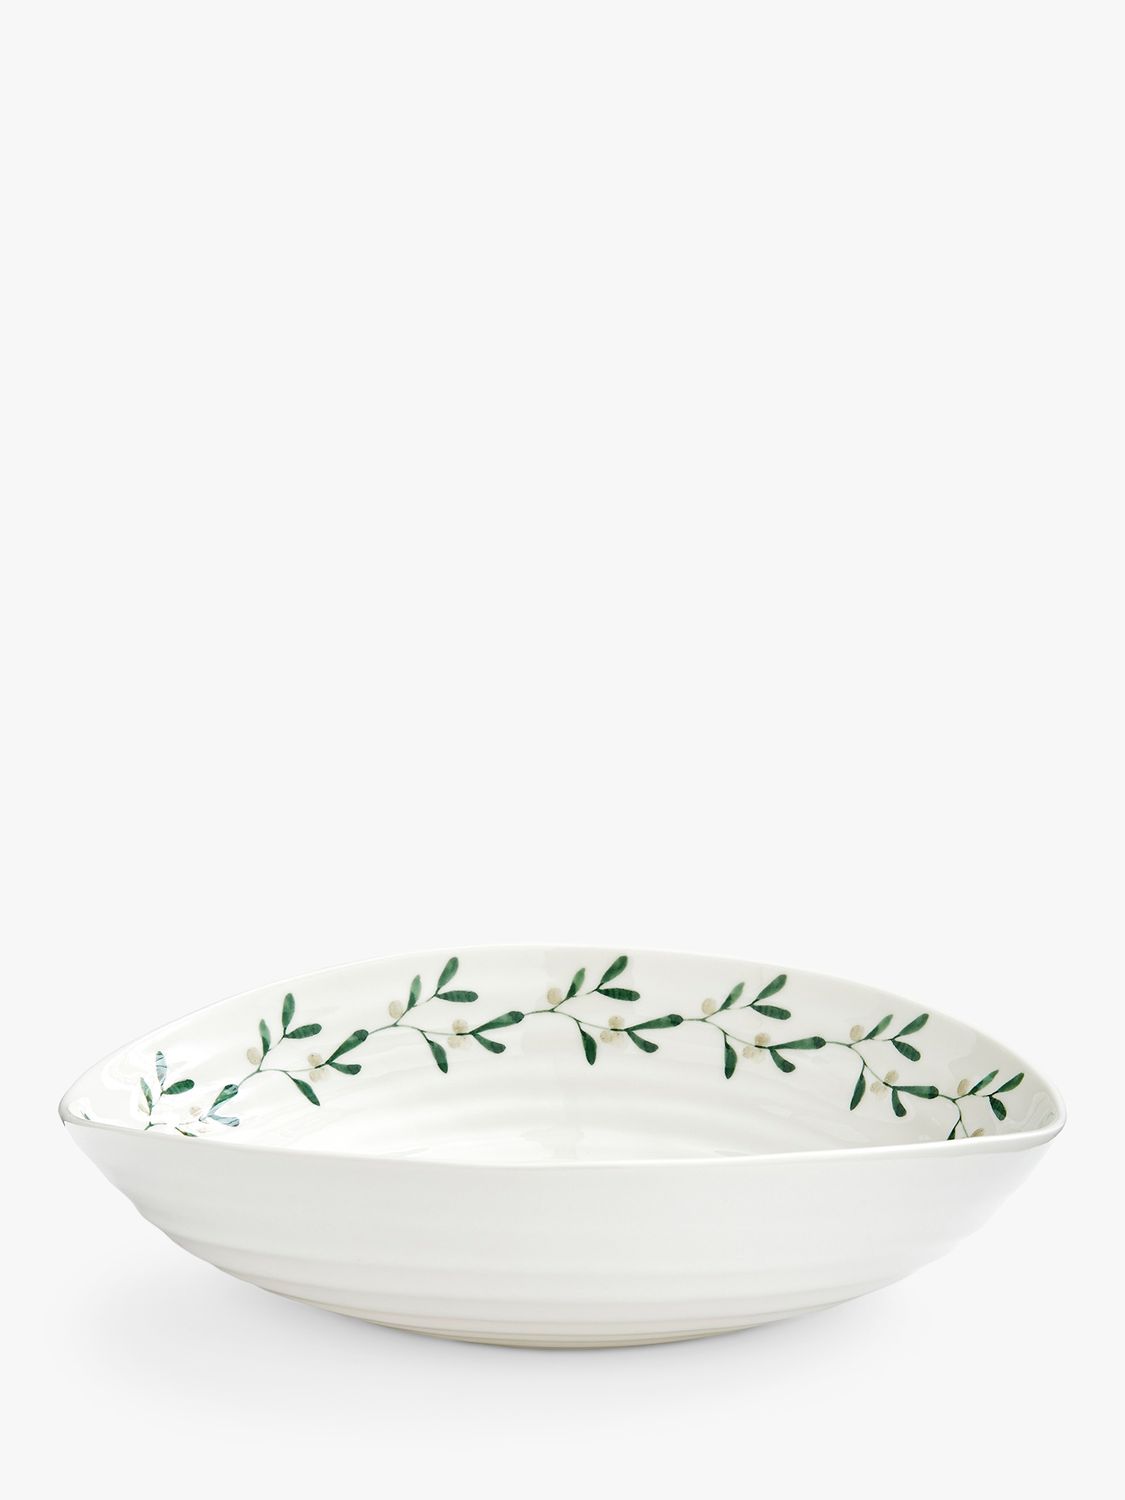 Sophie Conran for Portmeirion Mistletoe Porcelain Pasta Bowl, Set of 4,  23.5cm, White/Green